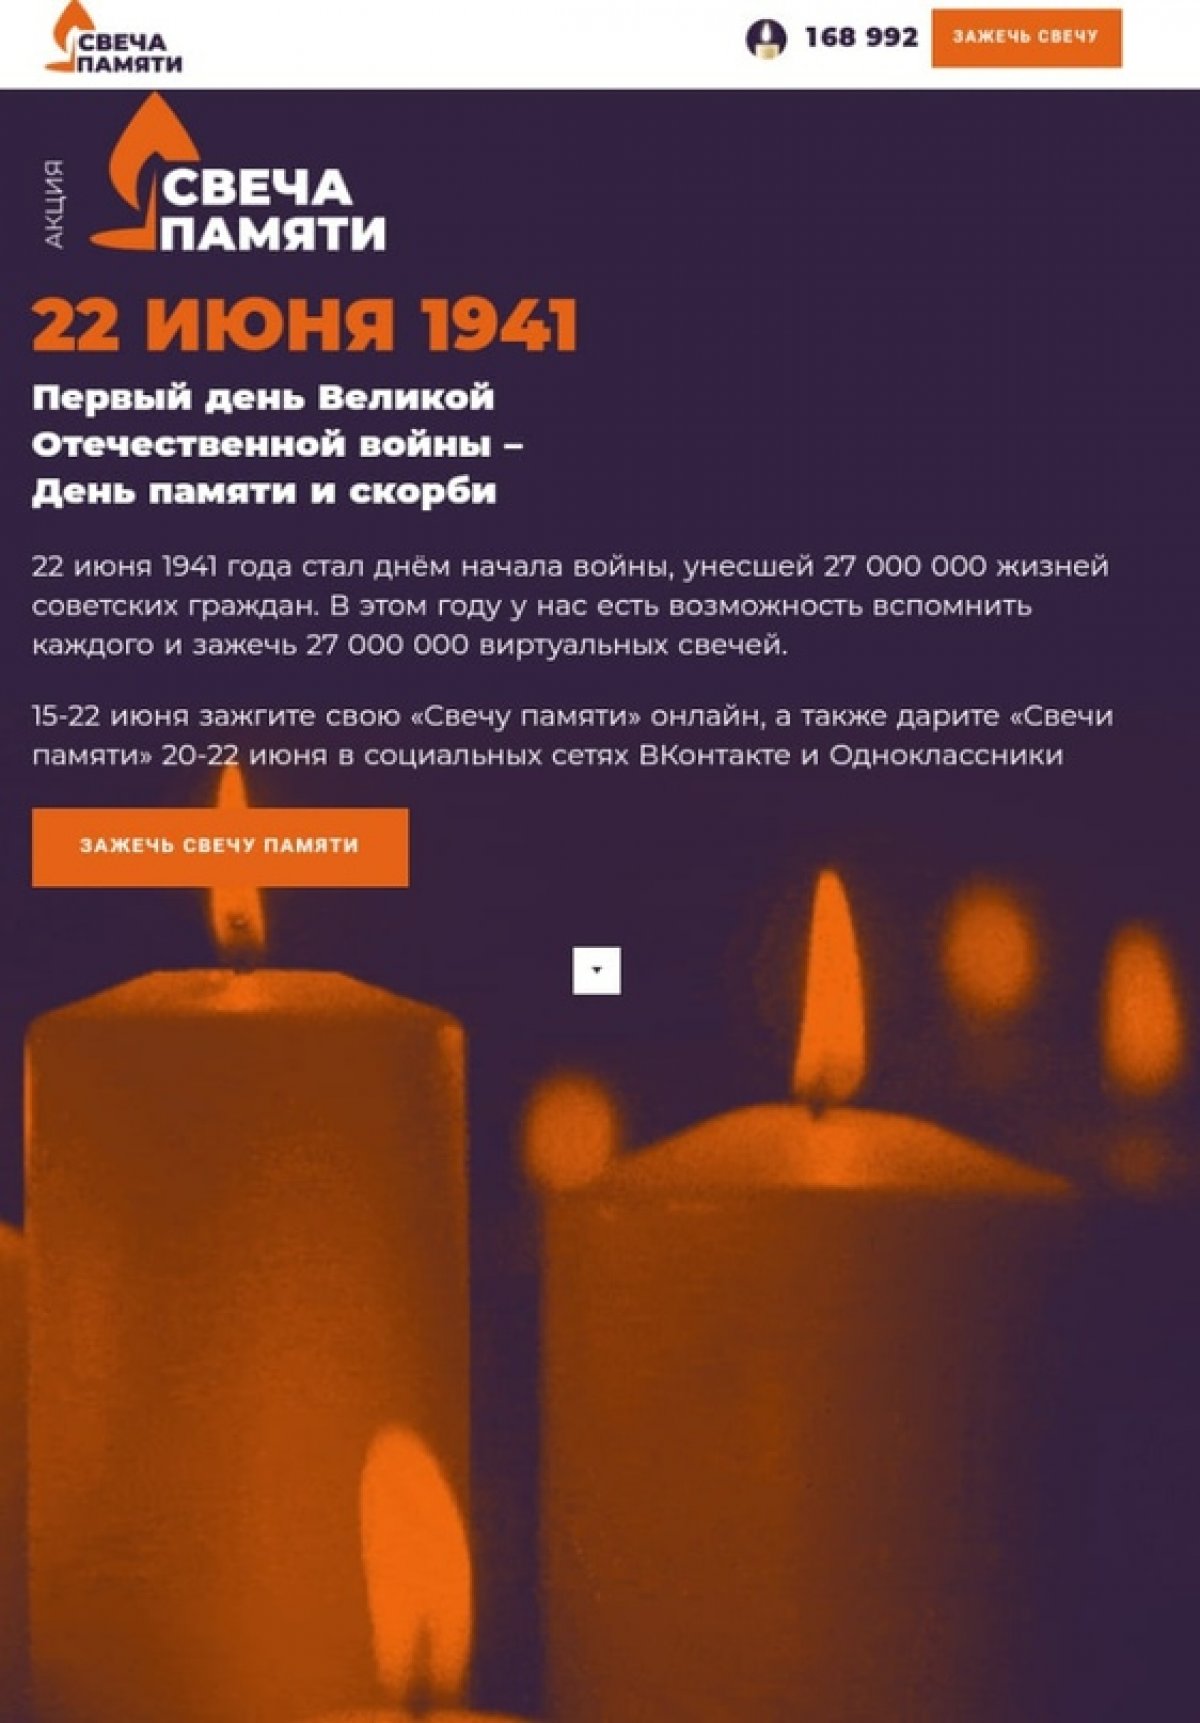 22 июня пройдёт общенациональной акции «Свеча памяти» по всей России – в память о тех, кто прошел через ужас Великой Отечественной войны и навсегда остался на поле боя или дожил до седин